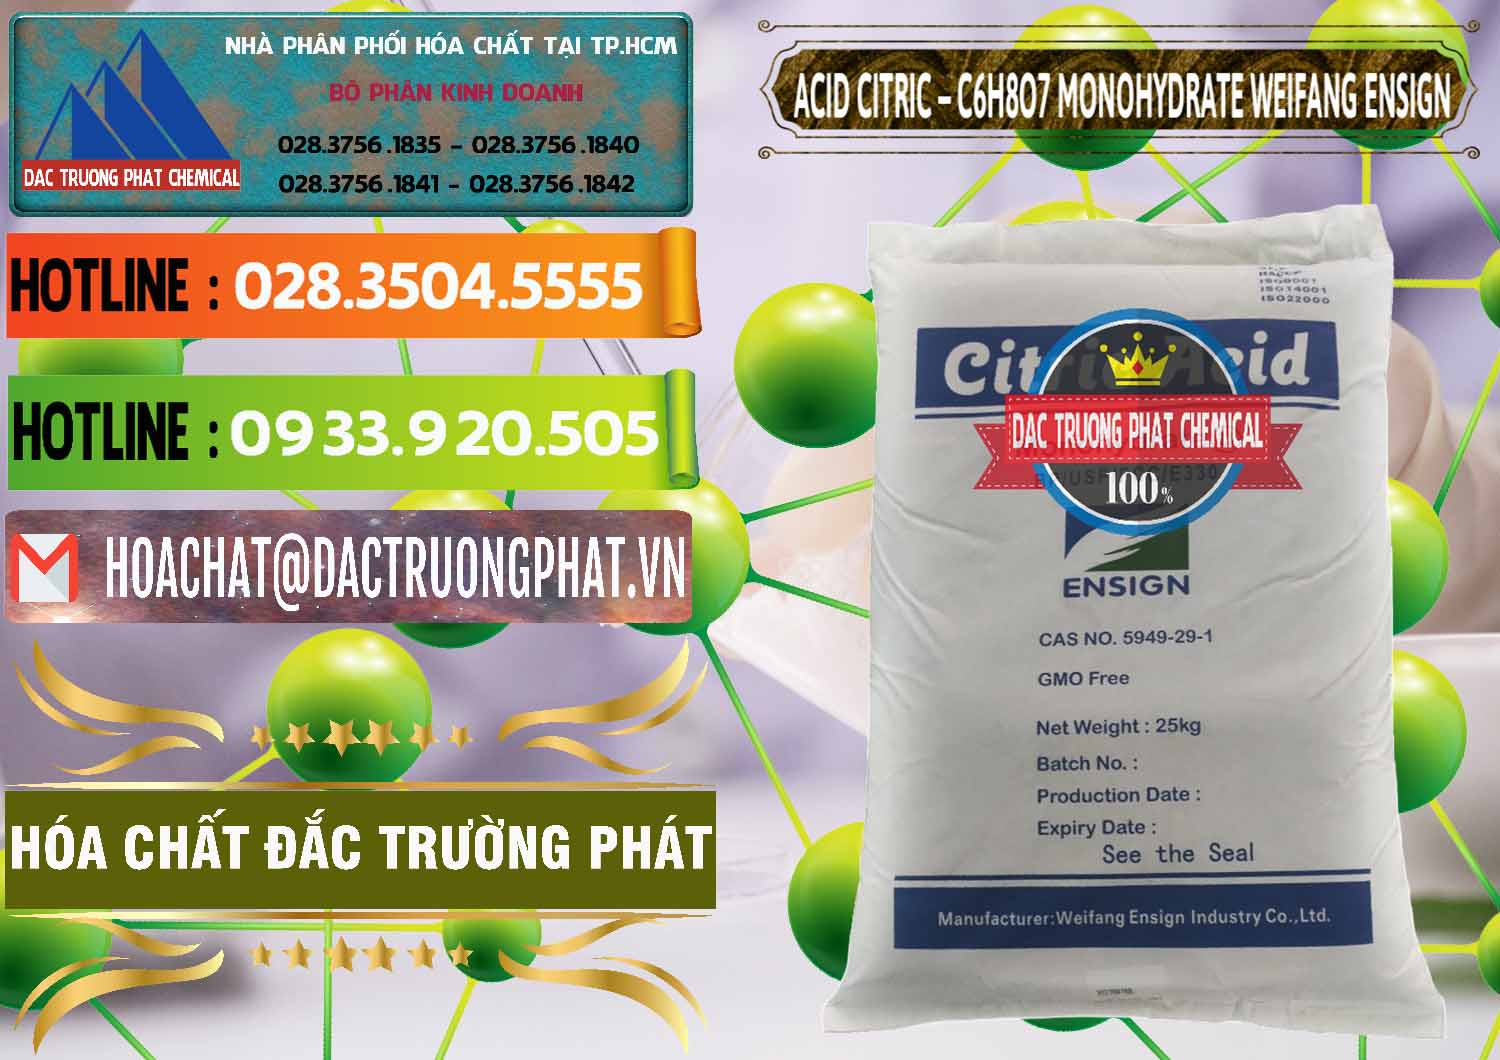 Nơi bán và phân phối Acid Citric - Axit Citric Monohydrate Weifang Trung Quốc China - 0009 - Phân phối _ bán hóa chất tại TP.HCM - cungcaphoachat.com.vn